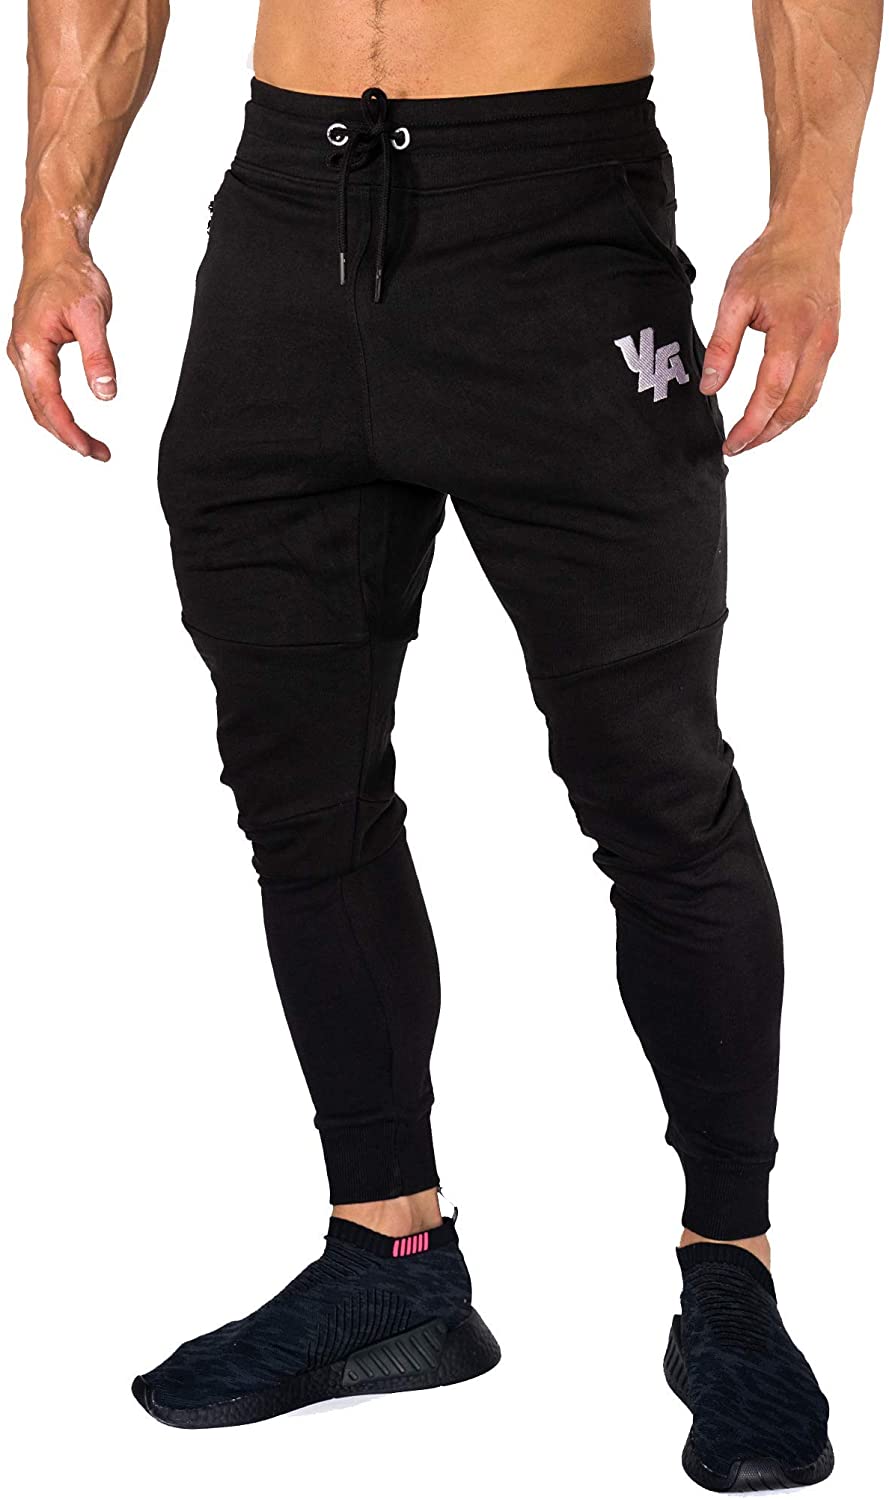 Wholesale YoungLA Joggers Men Slim Fit Sweatpant Gym Workout Zipper Pocket  202 Black Large